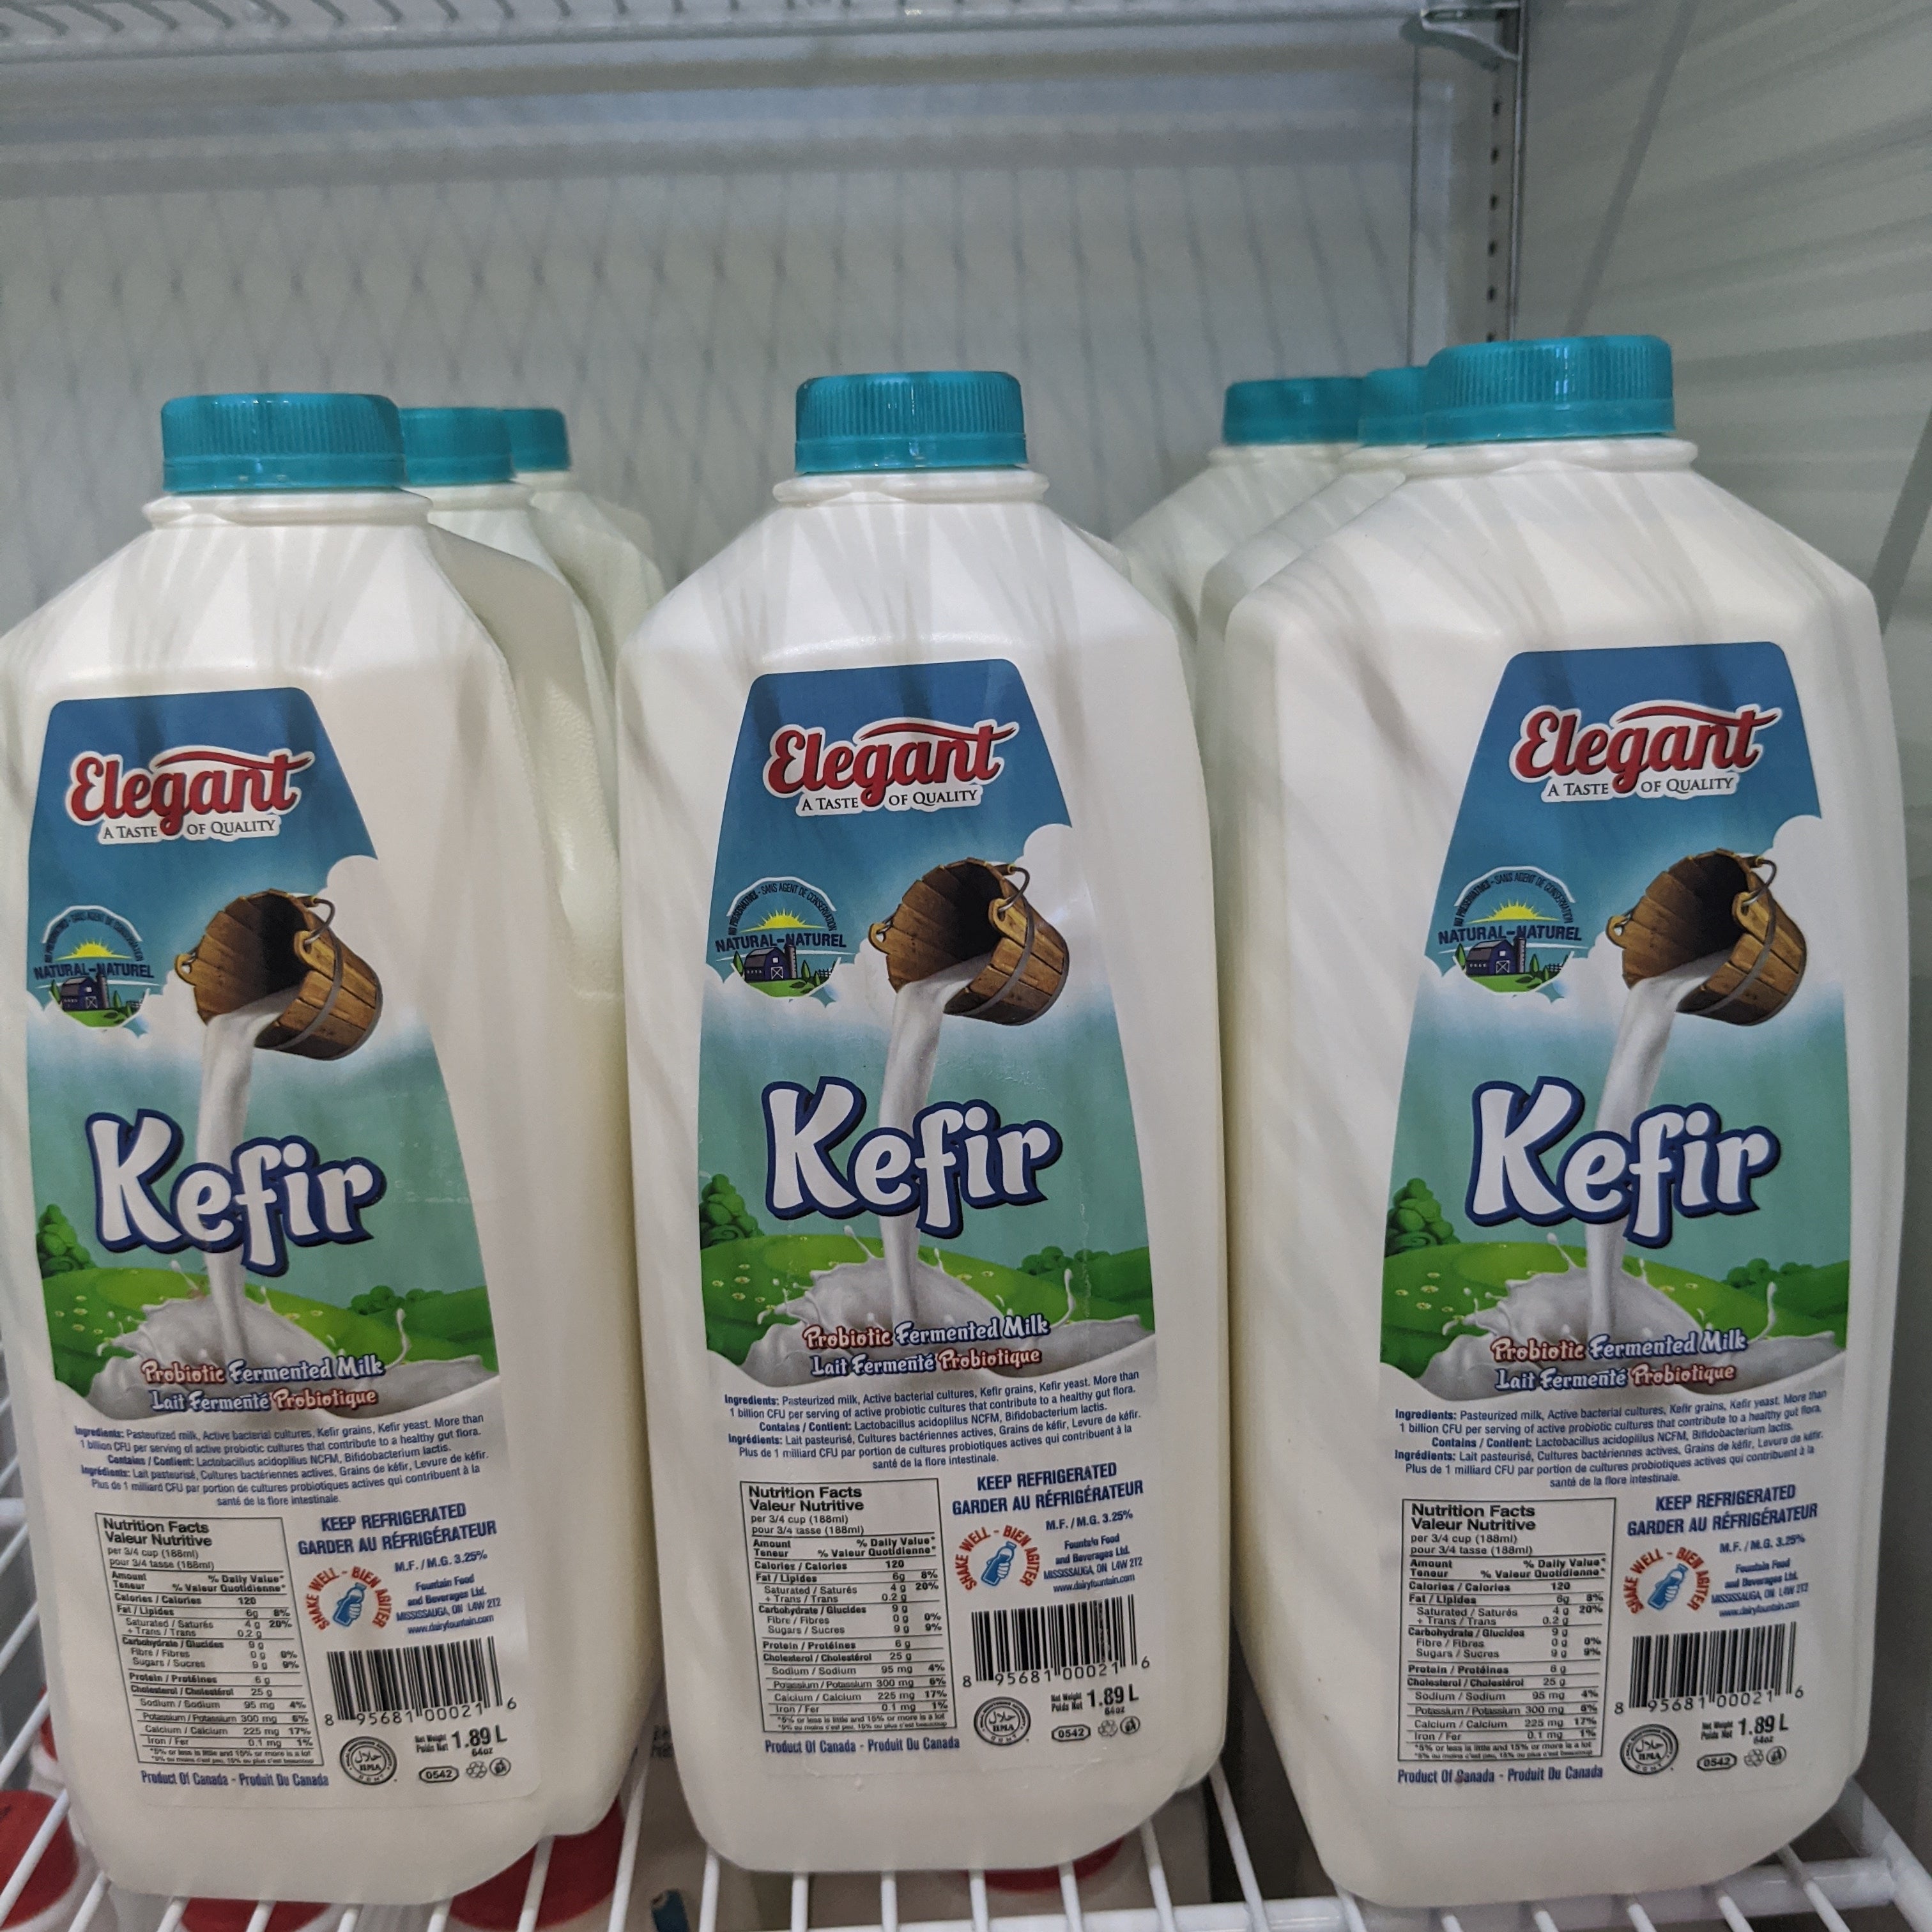 Kefir Probiotic Fermented Milk